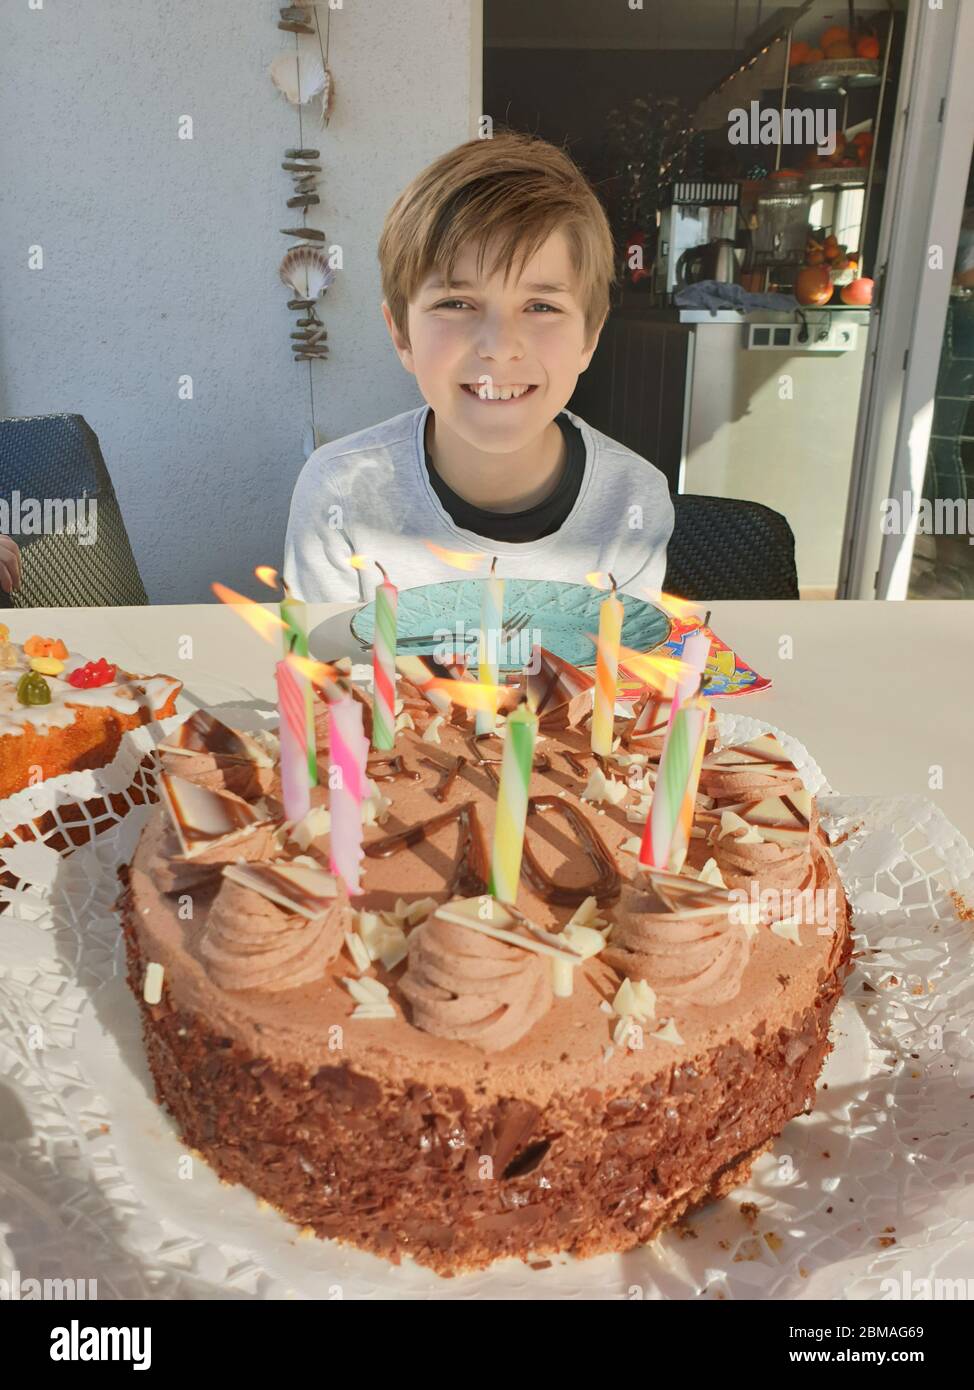 Geburtstagskind mit Geburtstagskuchen und brennenden Kerzen für seinen 10. Geburtstag, Deutschland Stockfoto